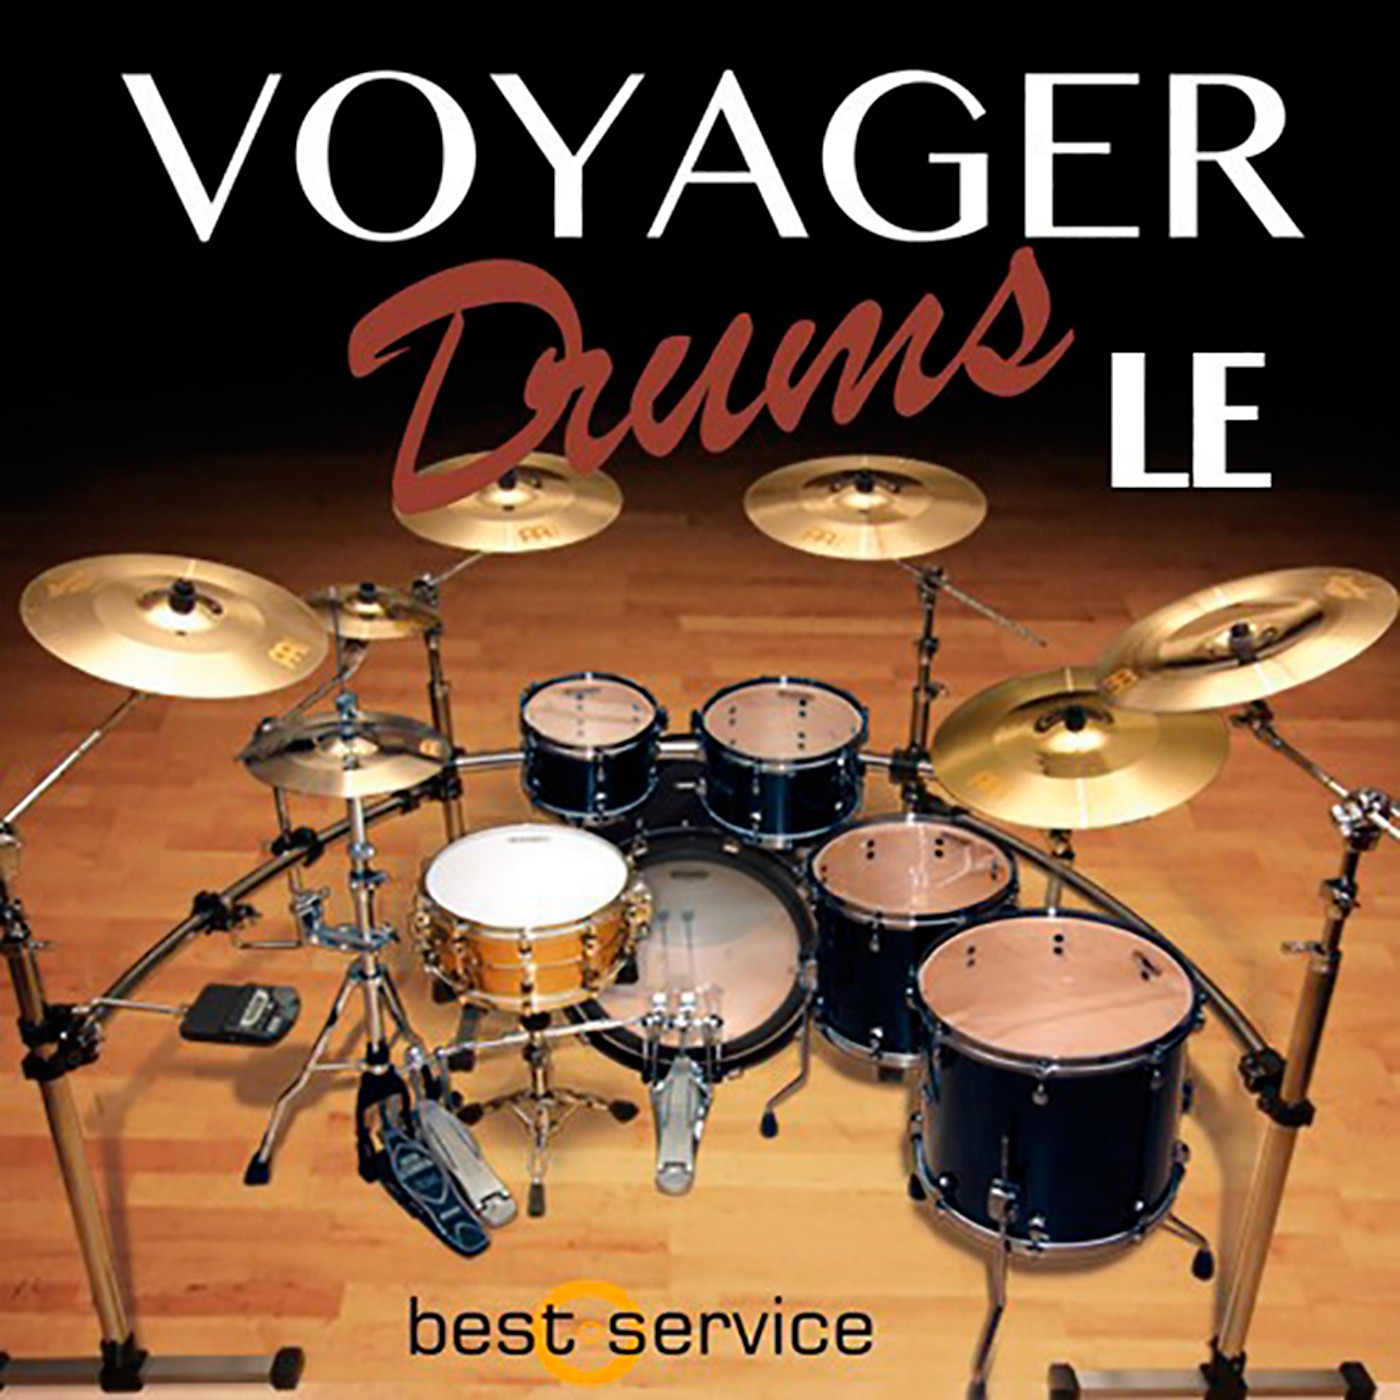 Best Service Voyager Drums LE thumbnail